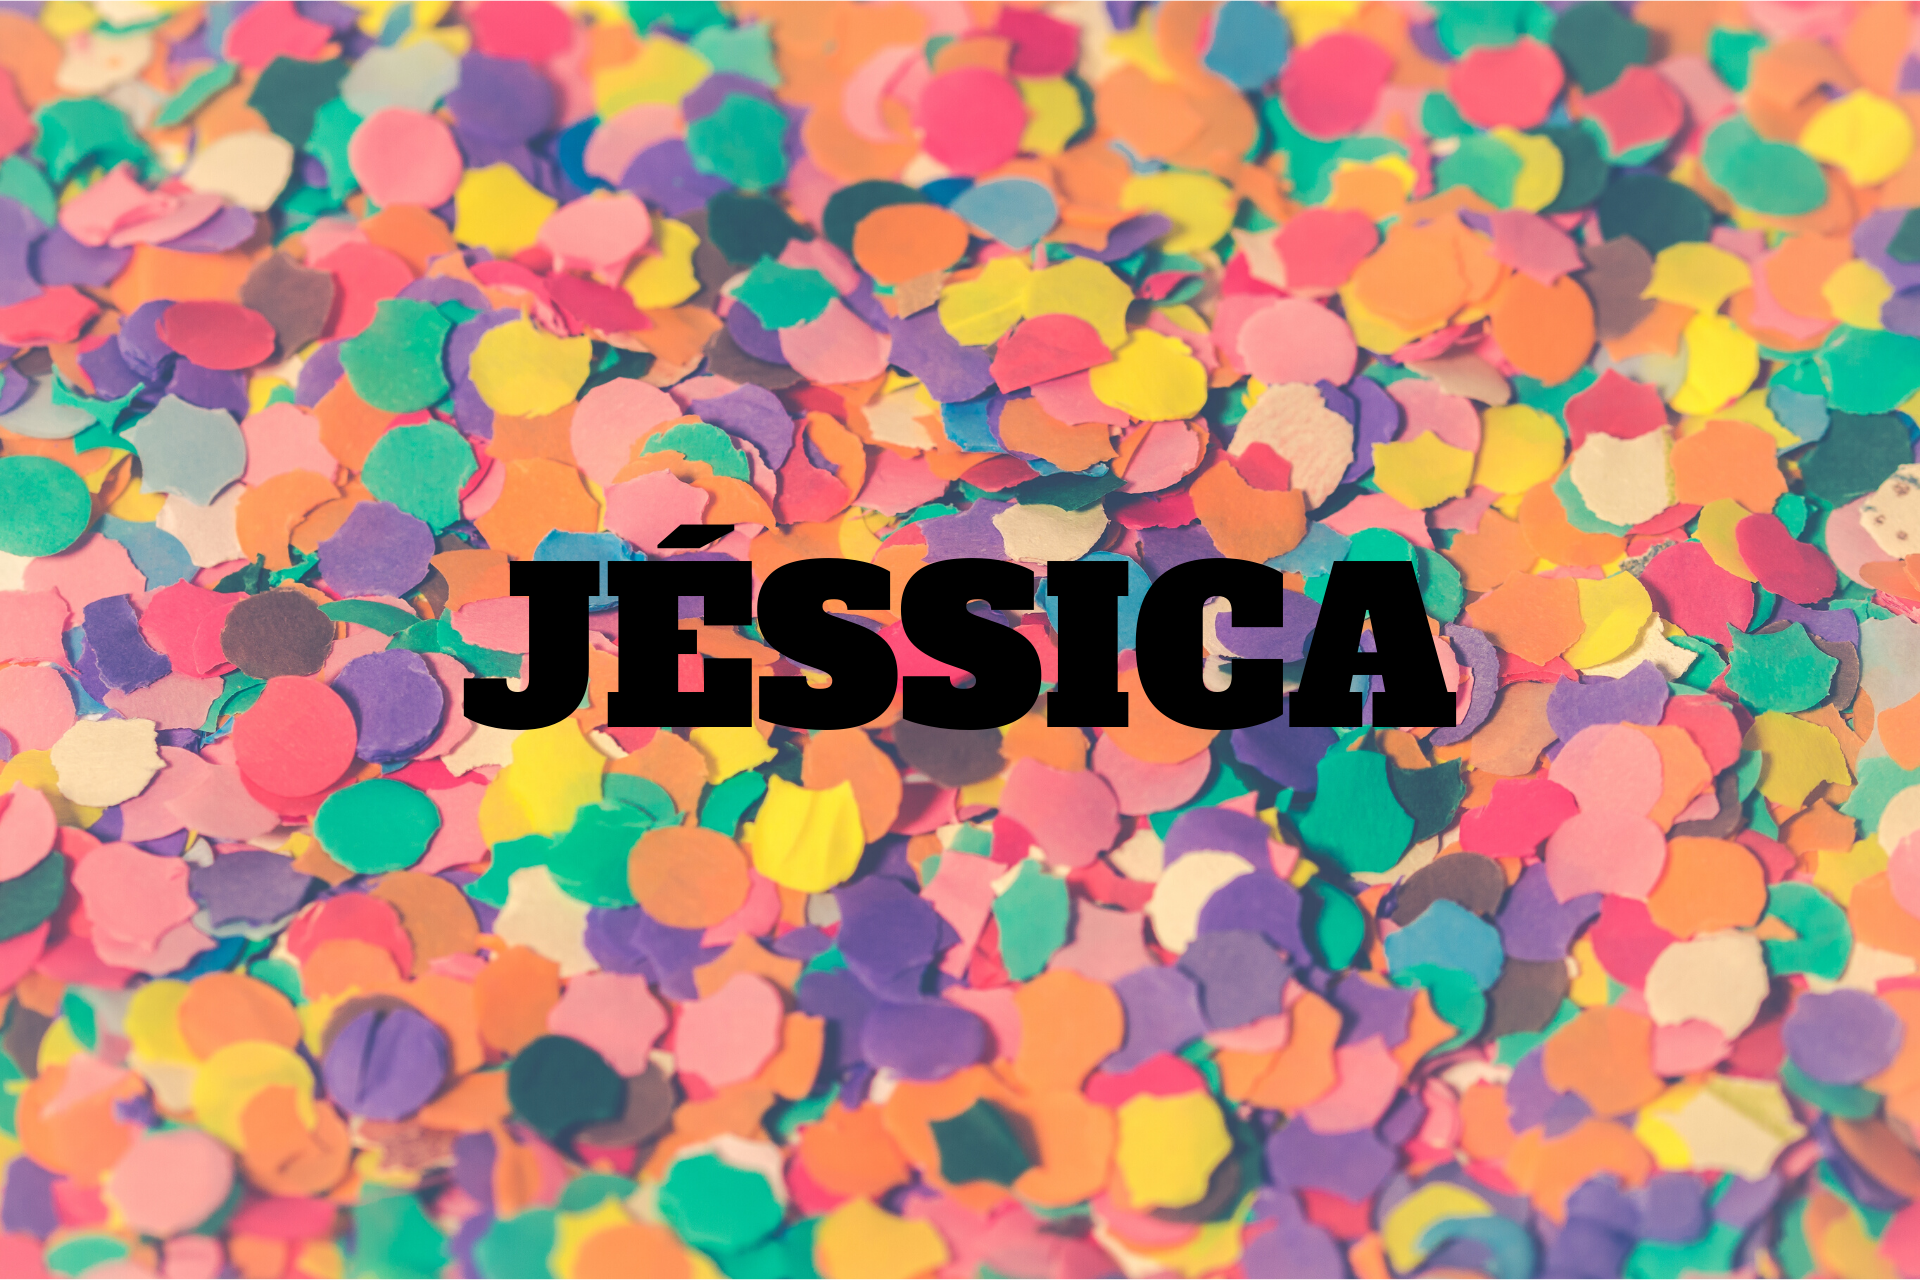  ジェシカの意味 - 名前の起源、歴史、性格と人気